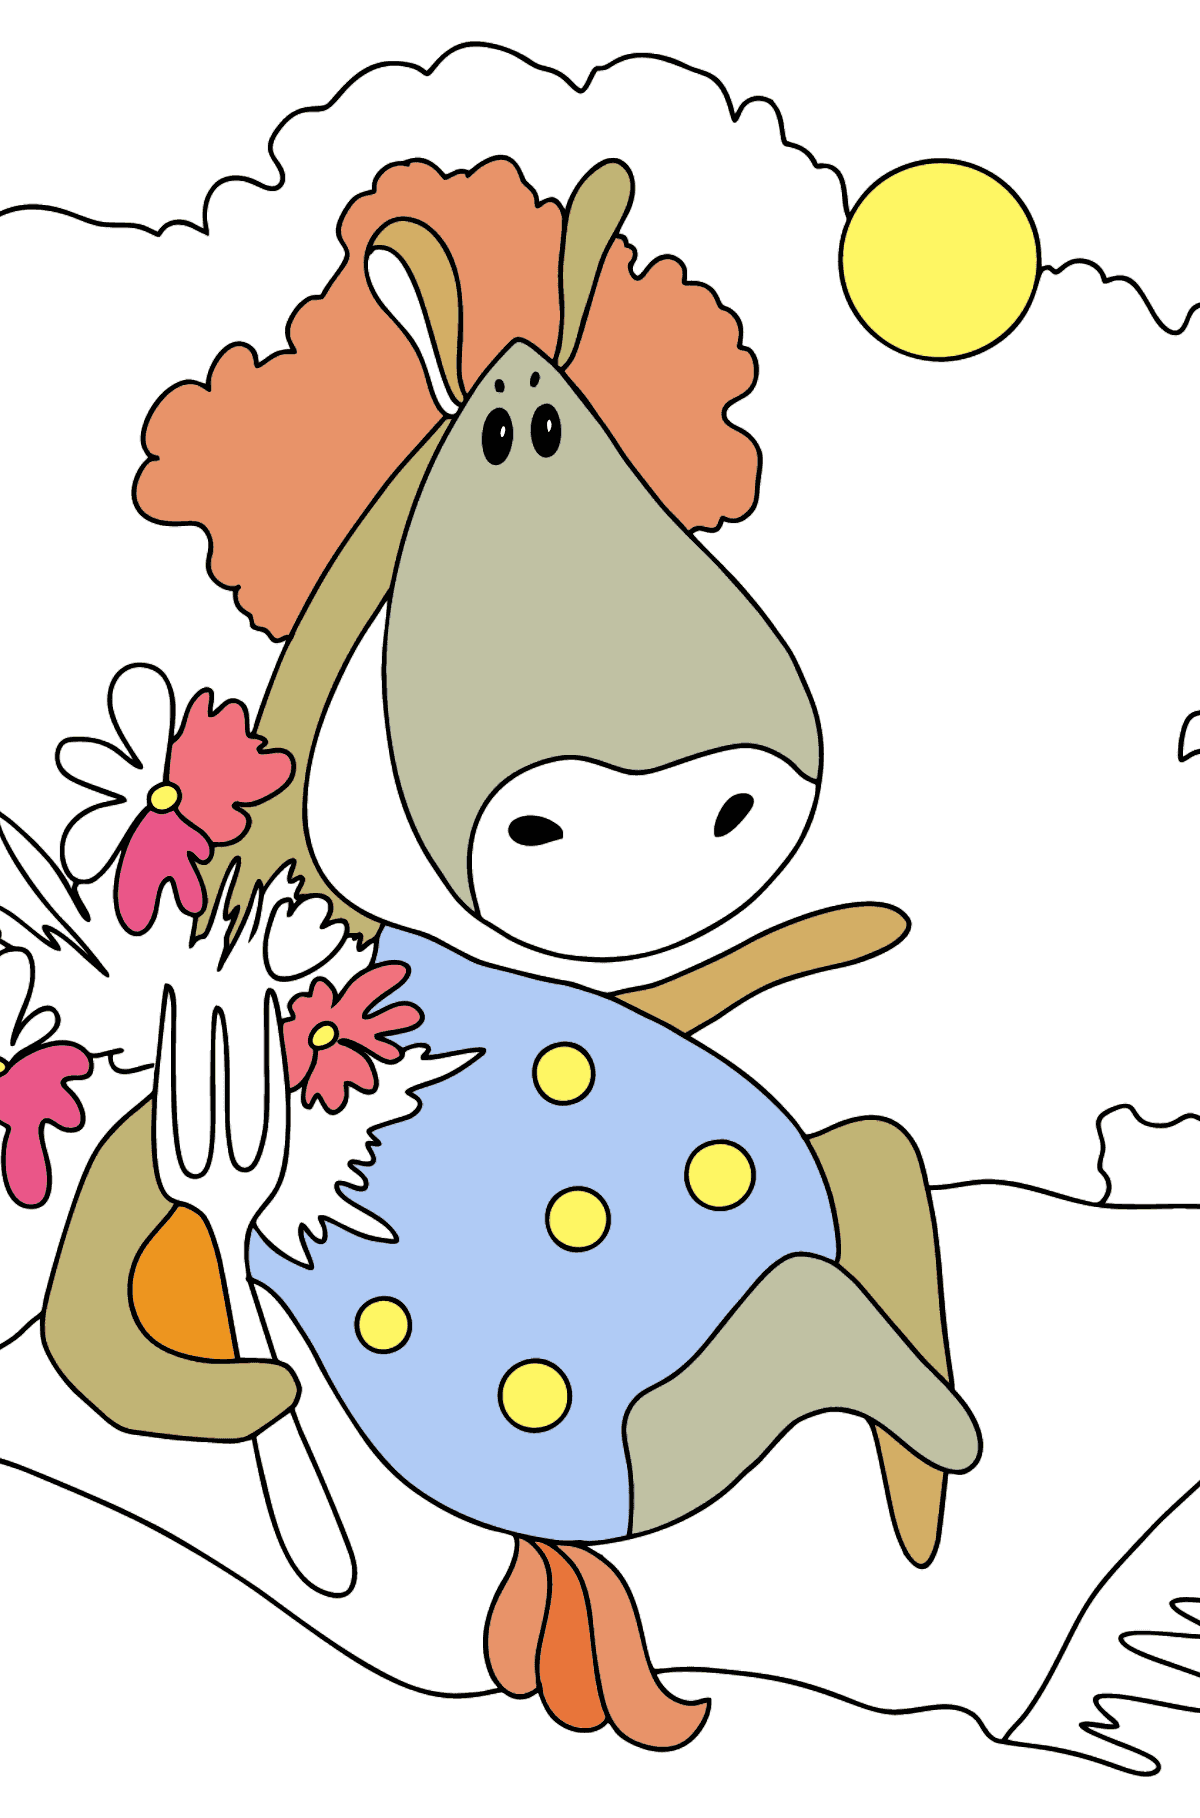 Desenho de cavalo mágico para colorir difícil - Imagens para Colorir para Crianças